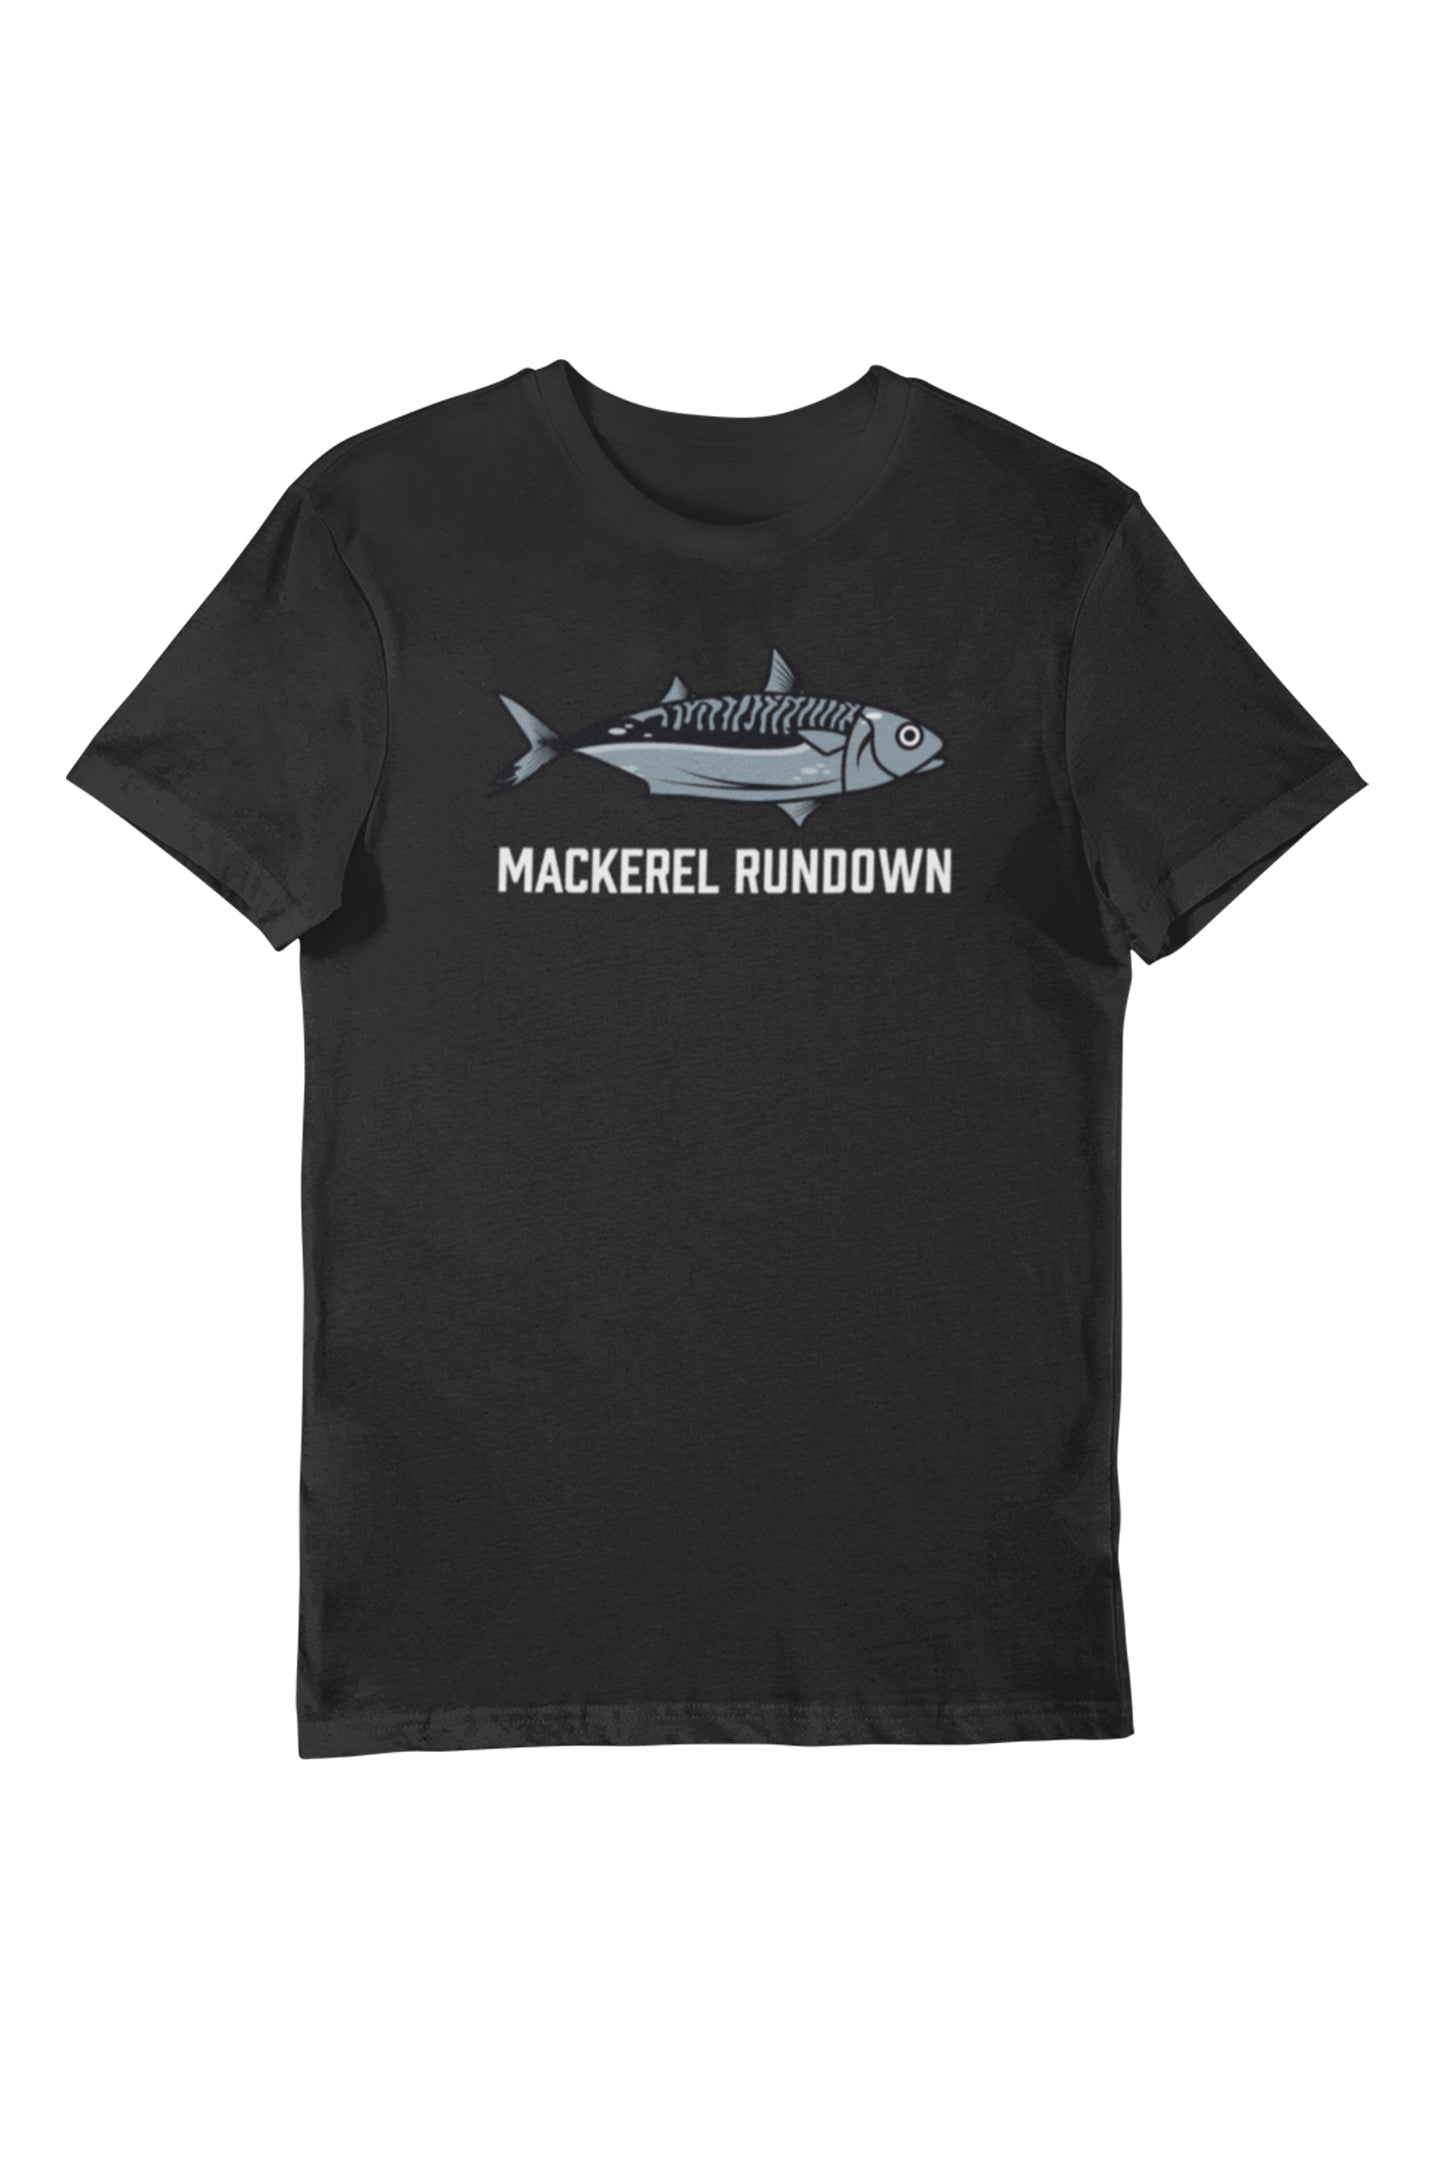 Mackerel Rundown - Women's